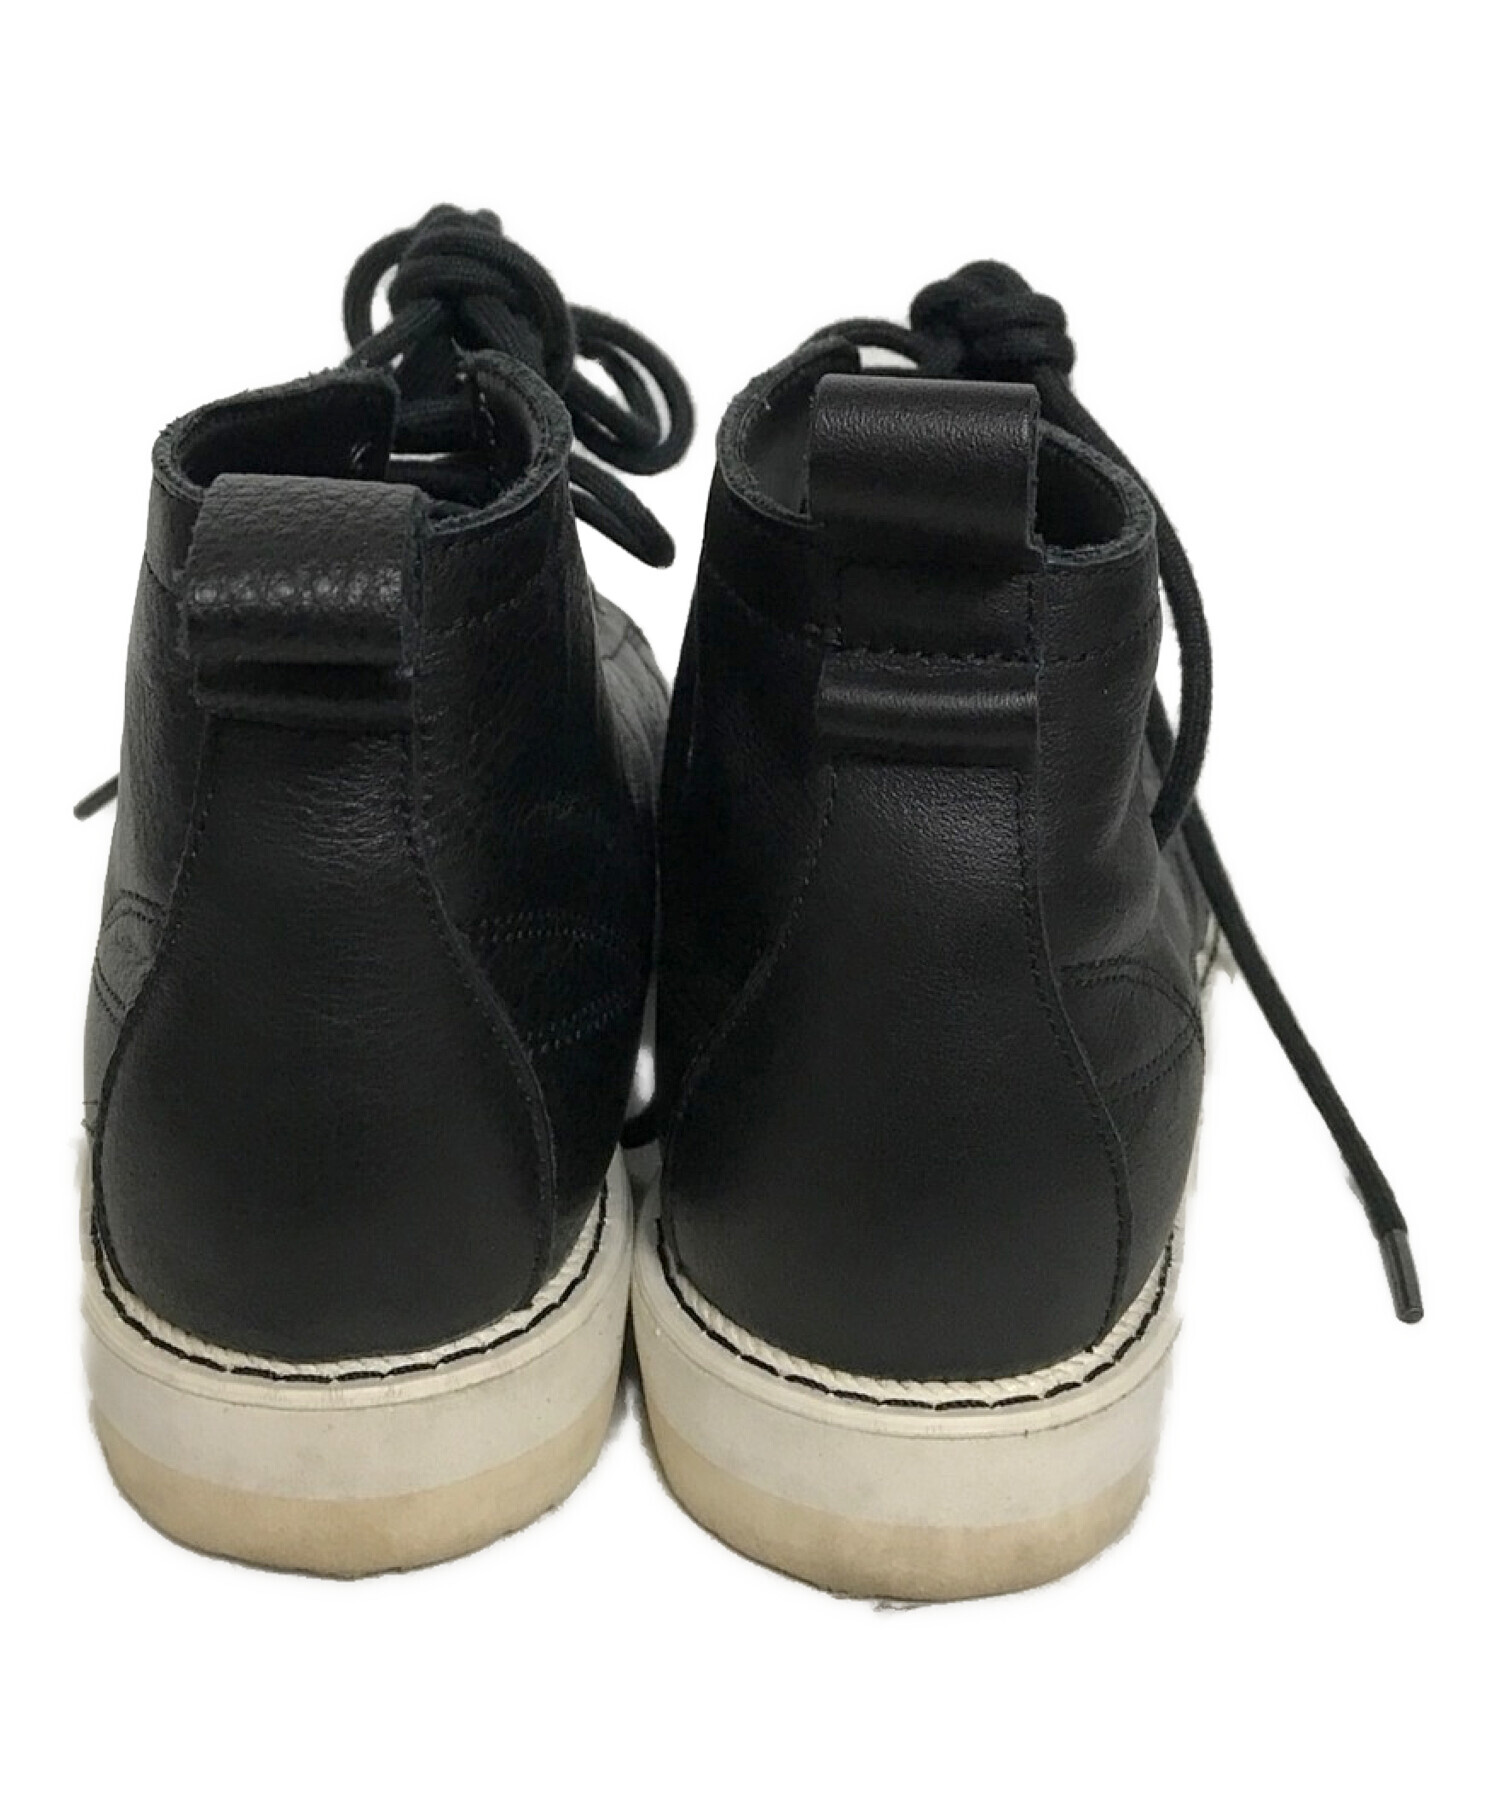 adidas (アディダス) スーパースターブーツ ブラック サイズ:23.5